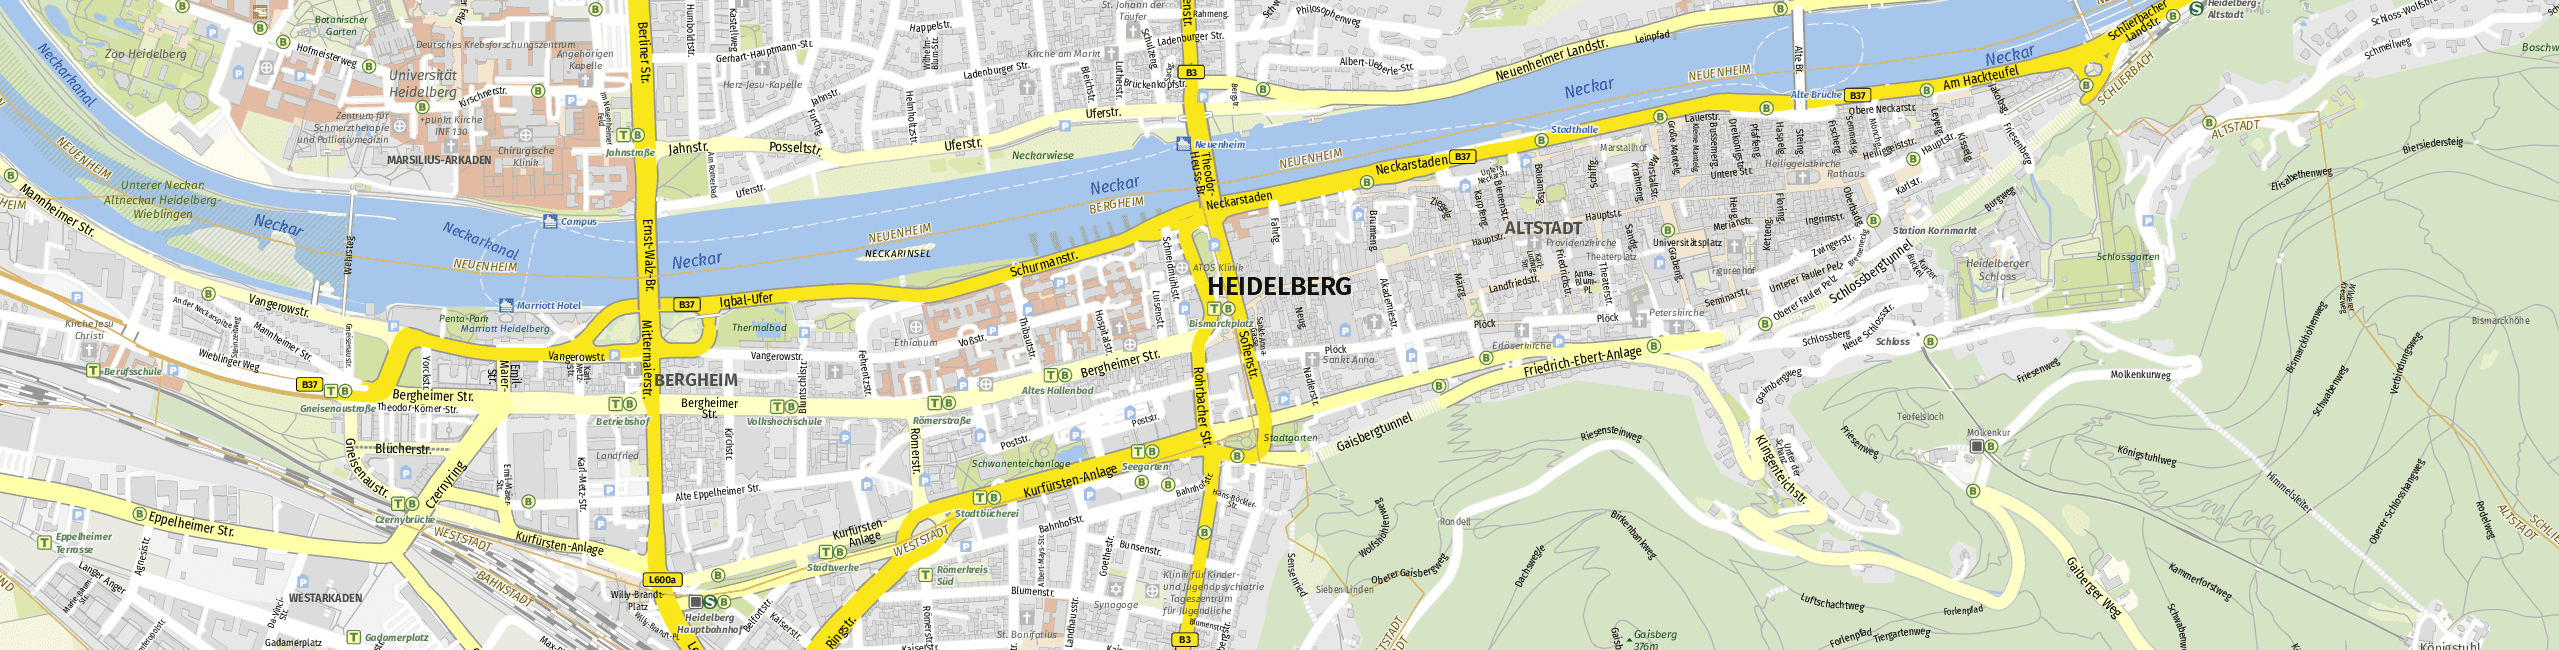 Stadtplan Heidelberg zum Downloaden.